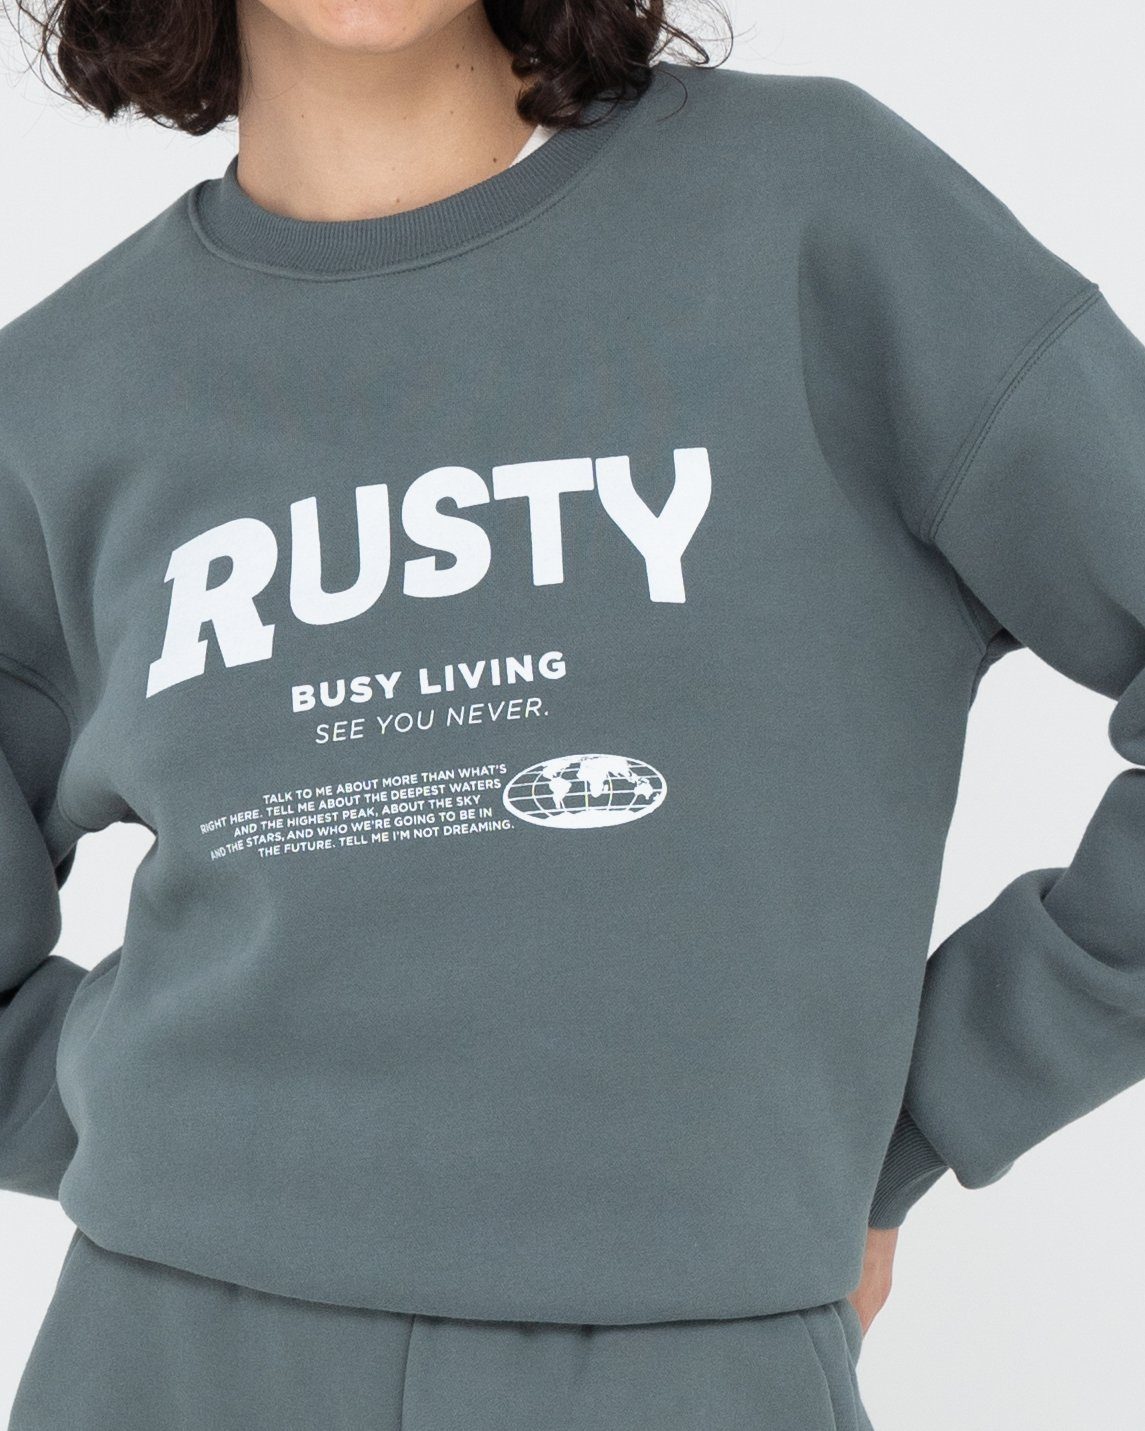 Rusty Sweatshirt BUSY LIVING RELAXED CREW FLEECE